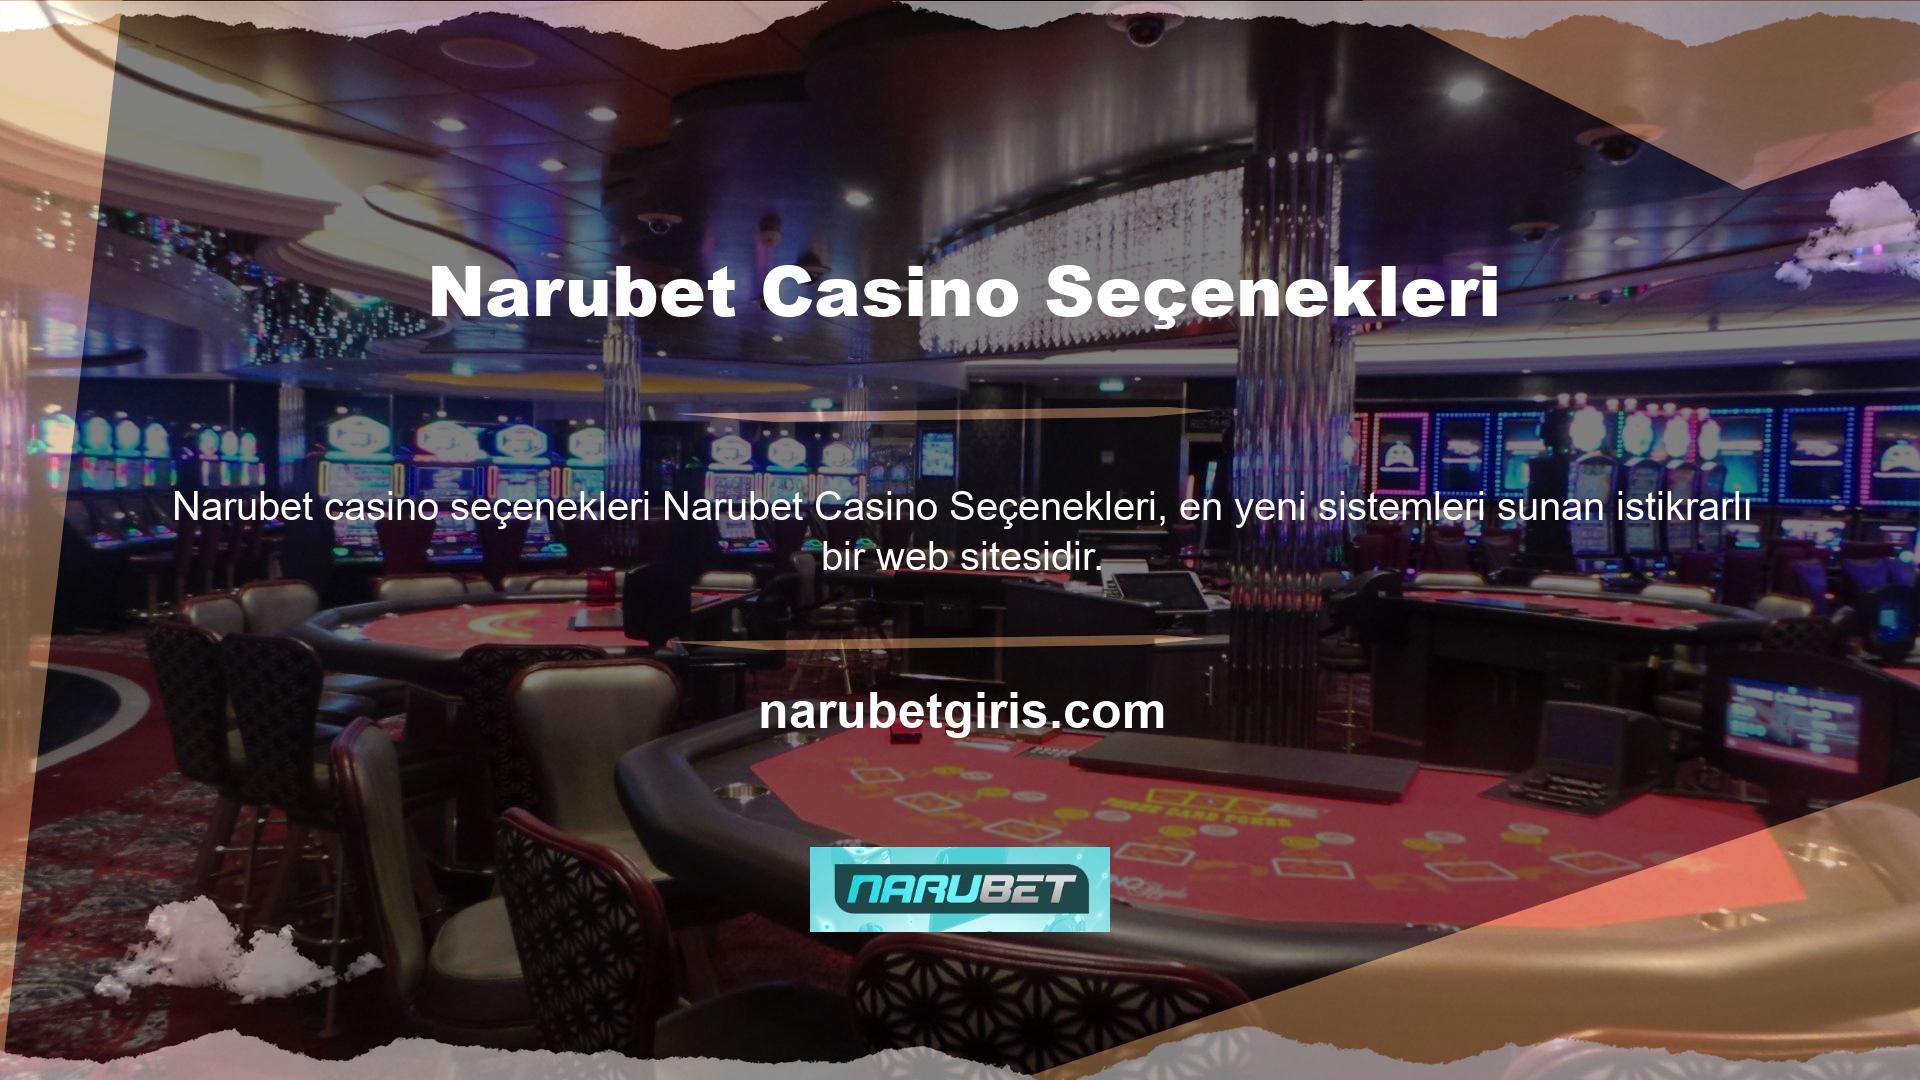 Kategoriler arasında finansal ticaret ve spor, casino, canlı casino, e-spor, poker, sanal bahis ve canlı bingo yer alır